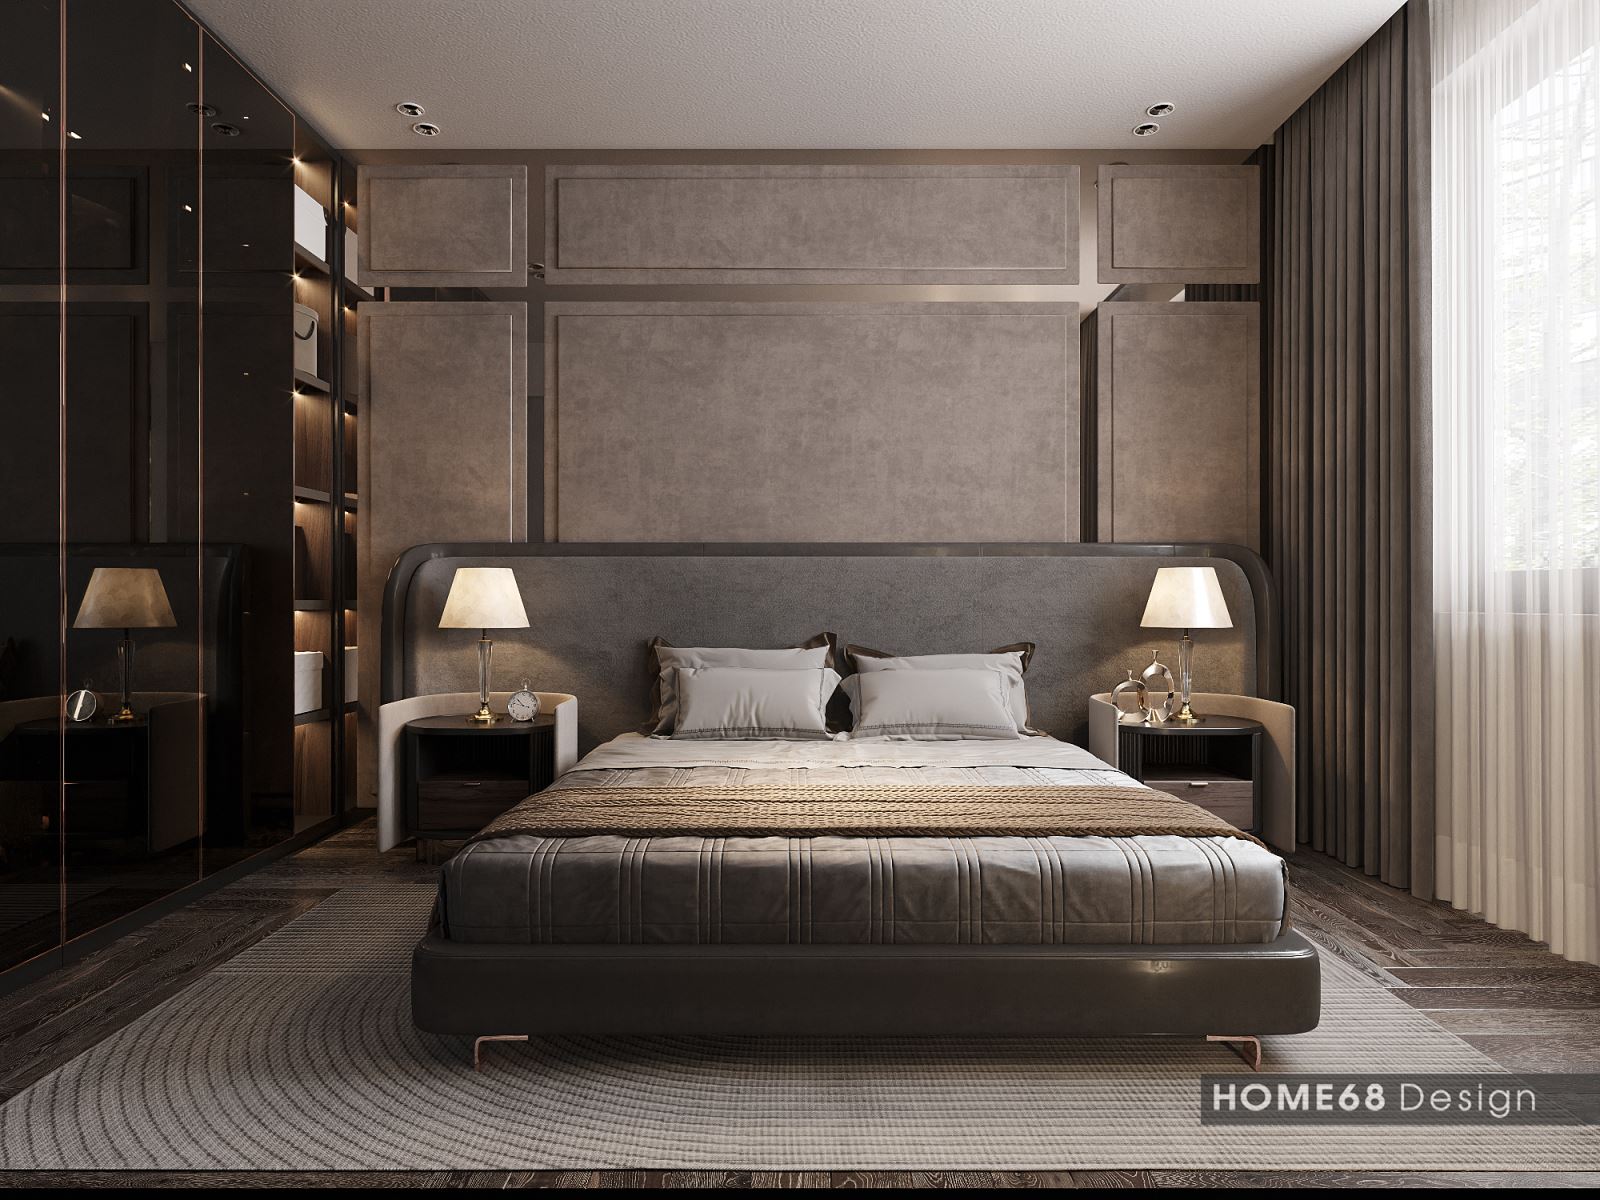 Phòng ngủ được thiết kế hiện đại mang lại cảm giác ấm áp, dịu dàng